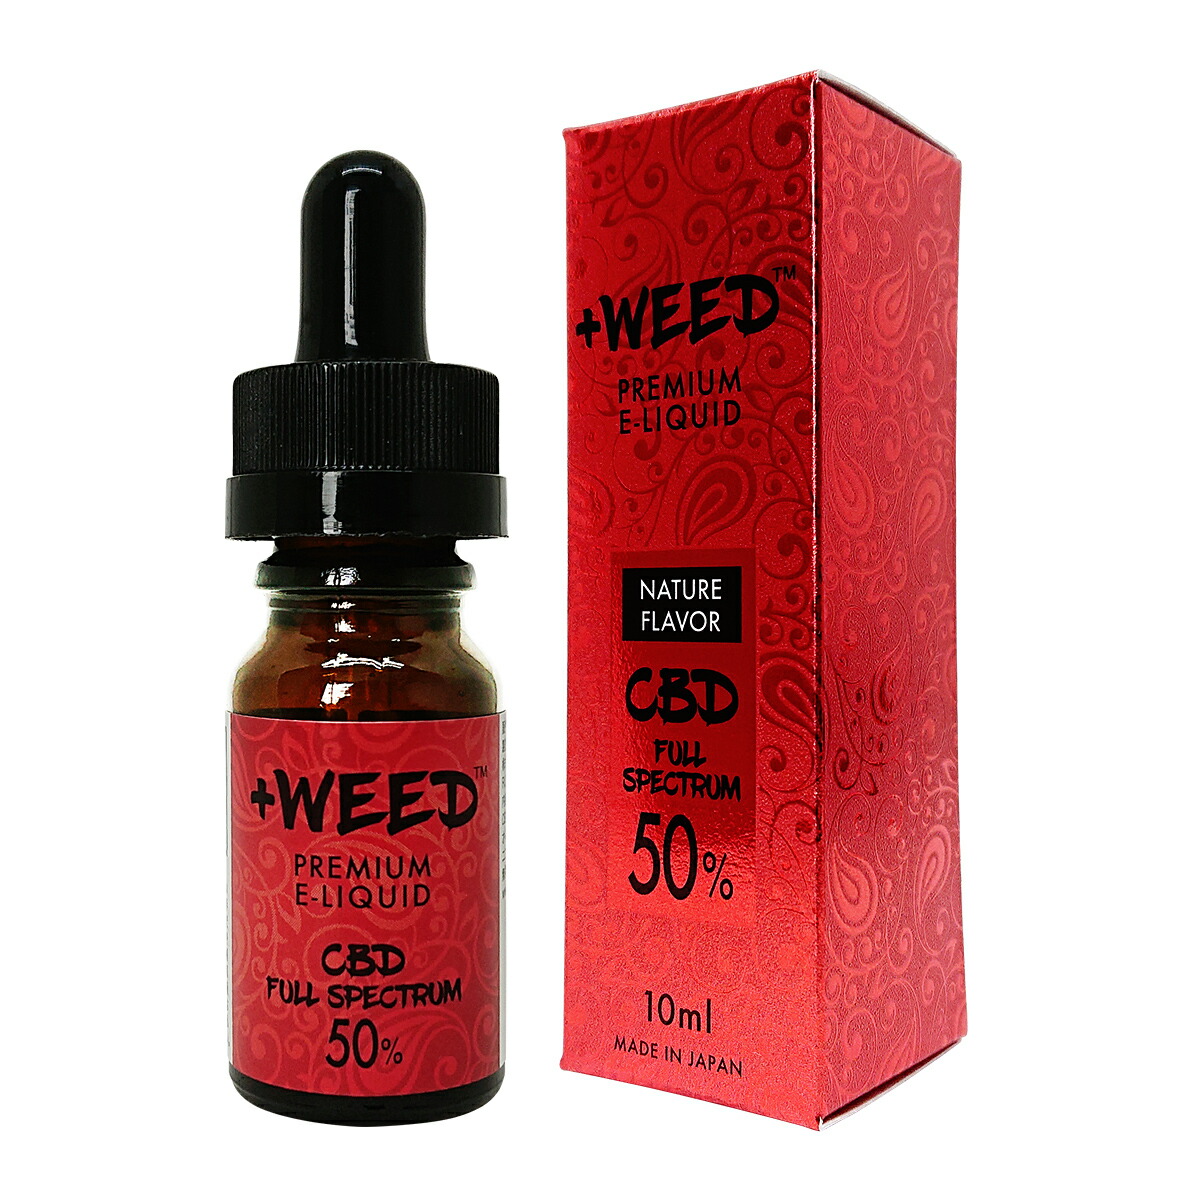 一番の贈り物 weed プラスウィード CBD リキッド 濃度50% CBD濃度50%